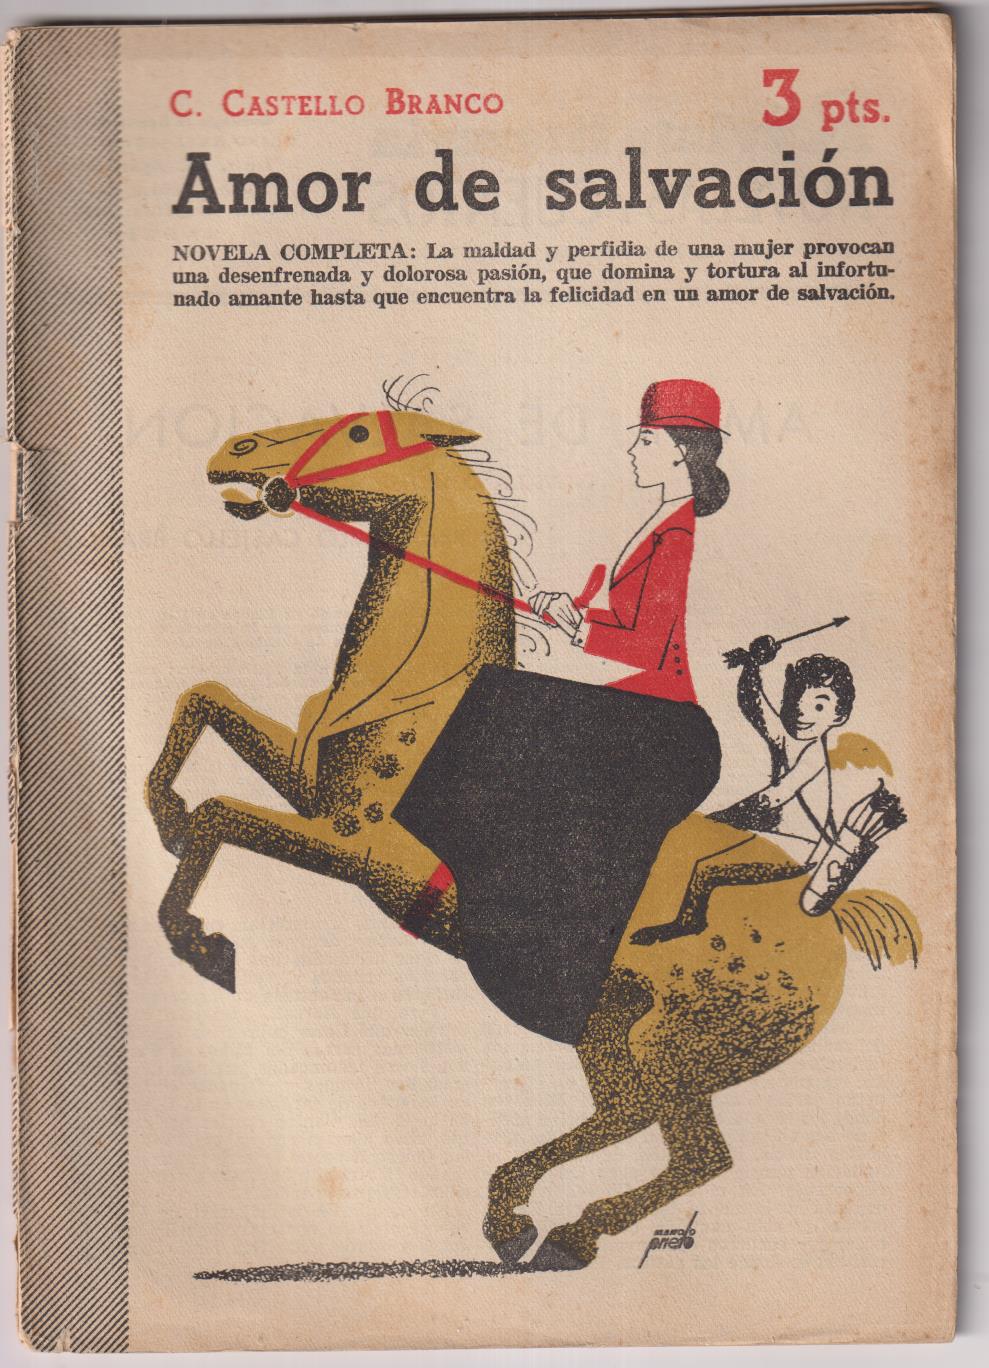 Revista Literaria Novelas y Cuentos nº 1164. C. Castello Branco. Amor de salvación, Año 1953